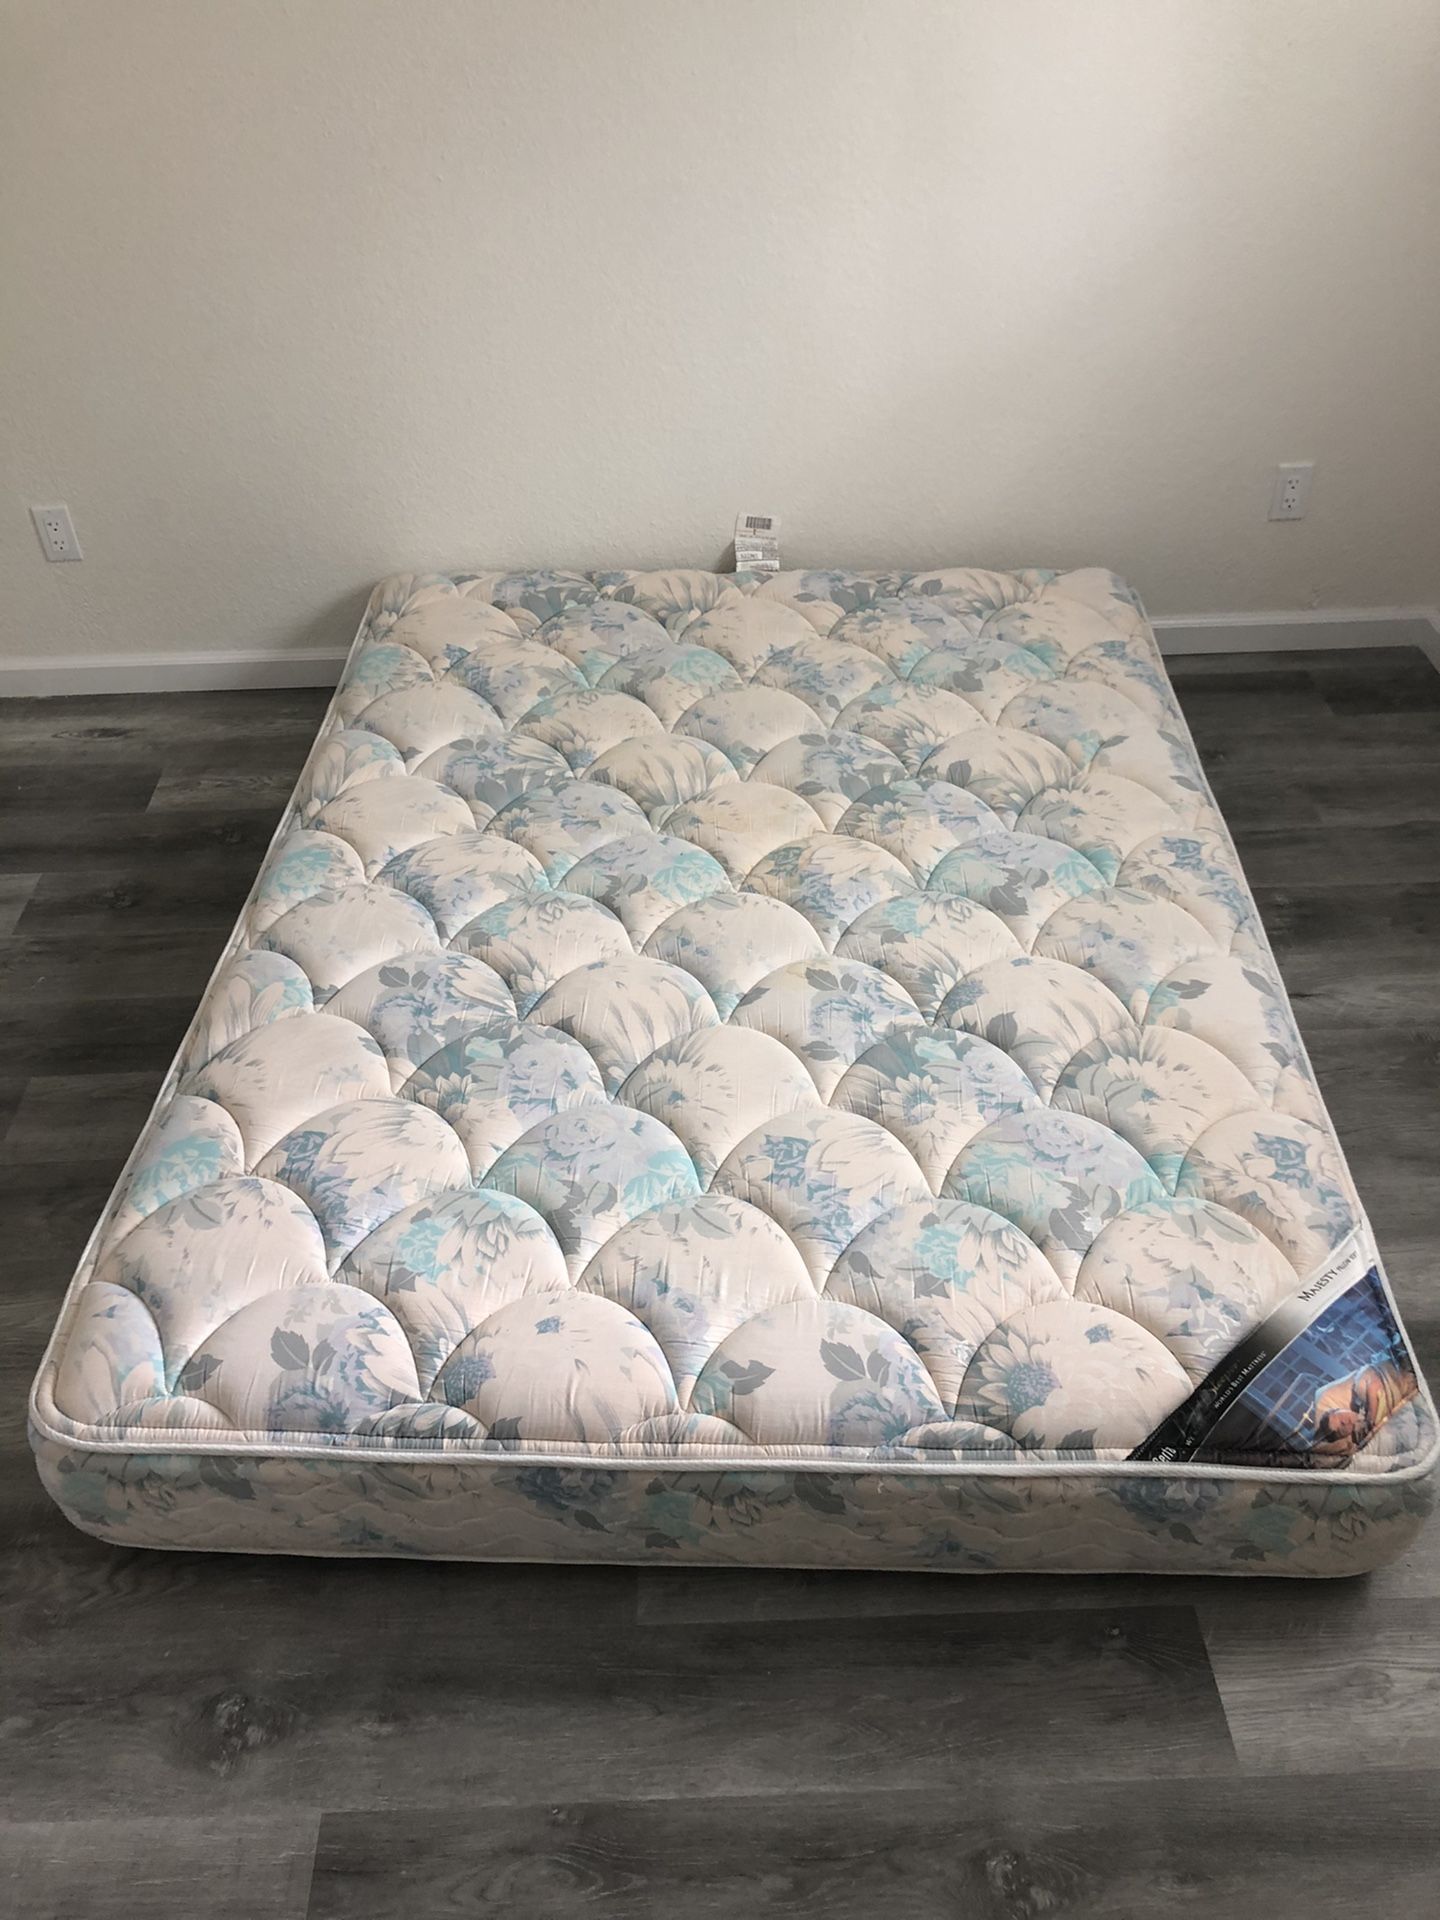 Free - Serta queen size mattress